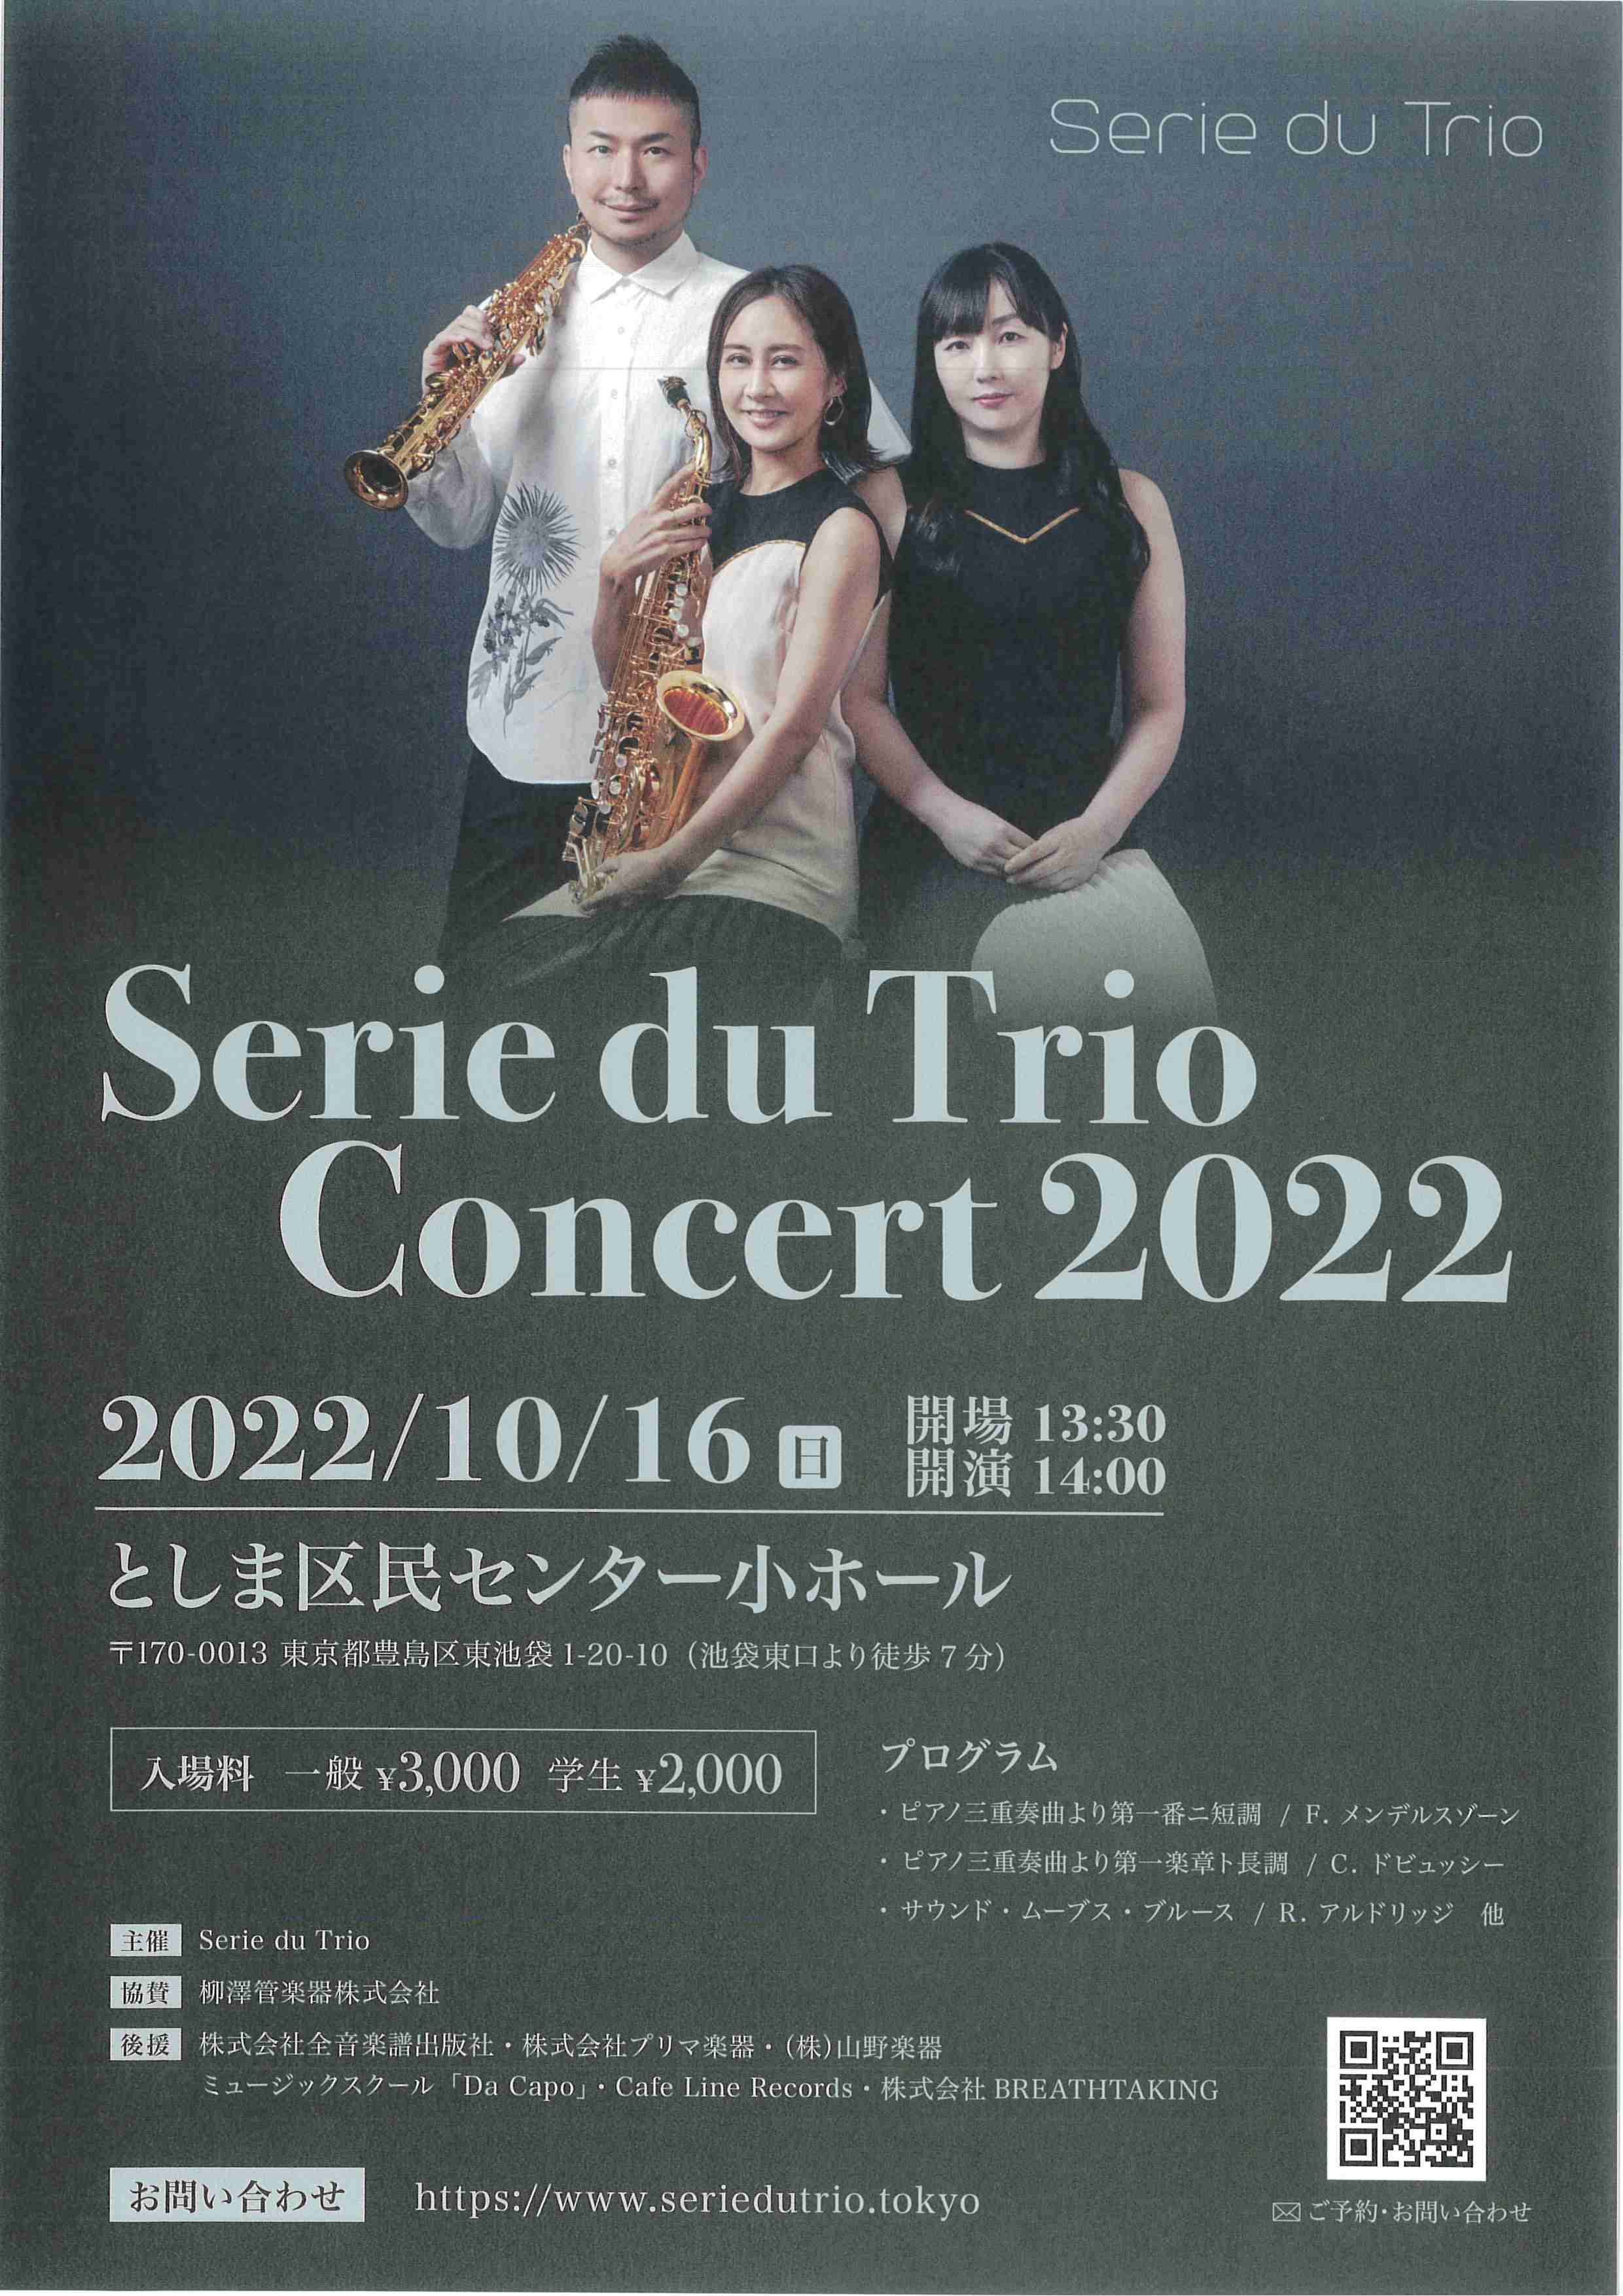 Serie du Trio Concert 2022